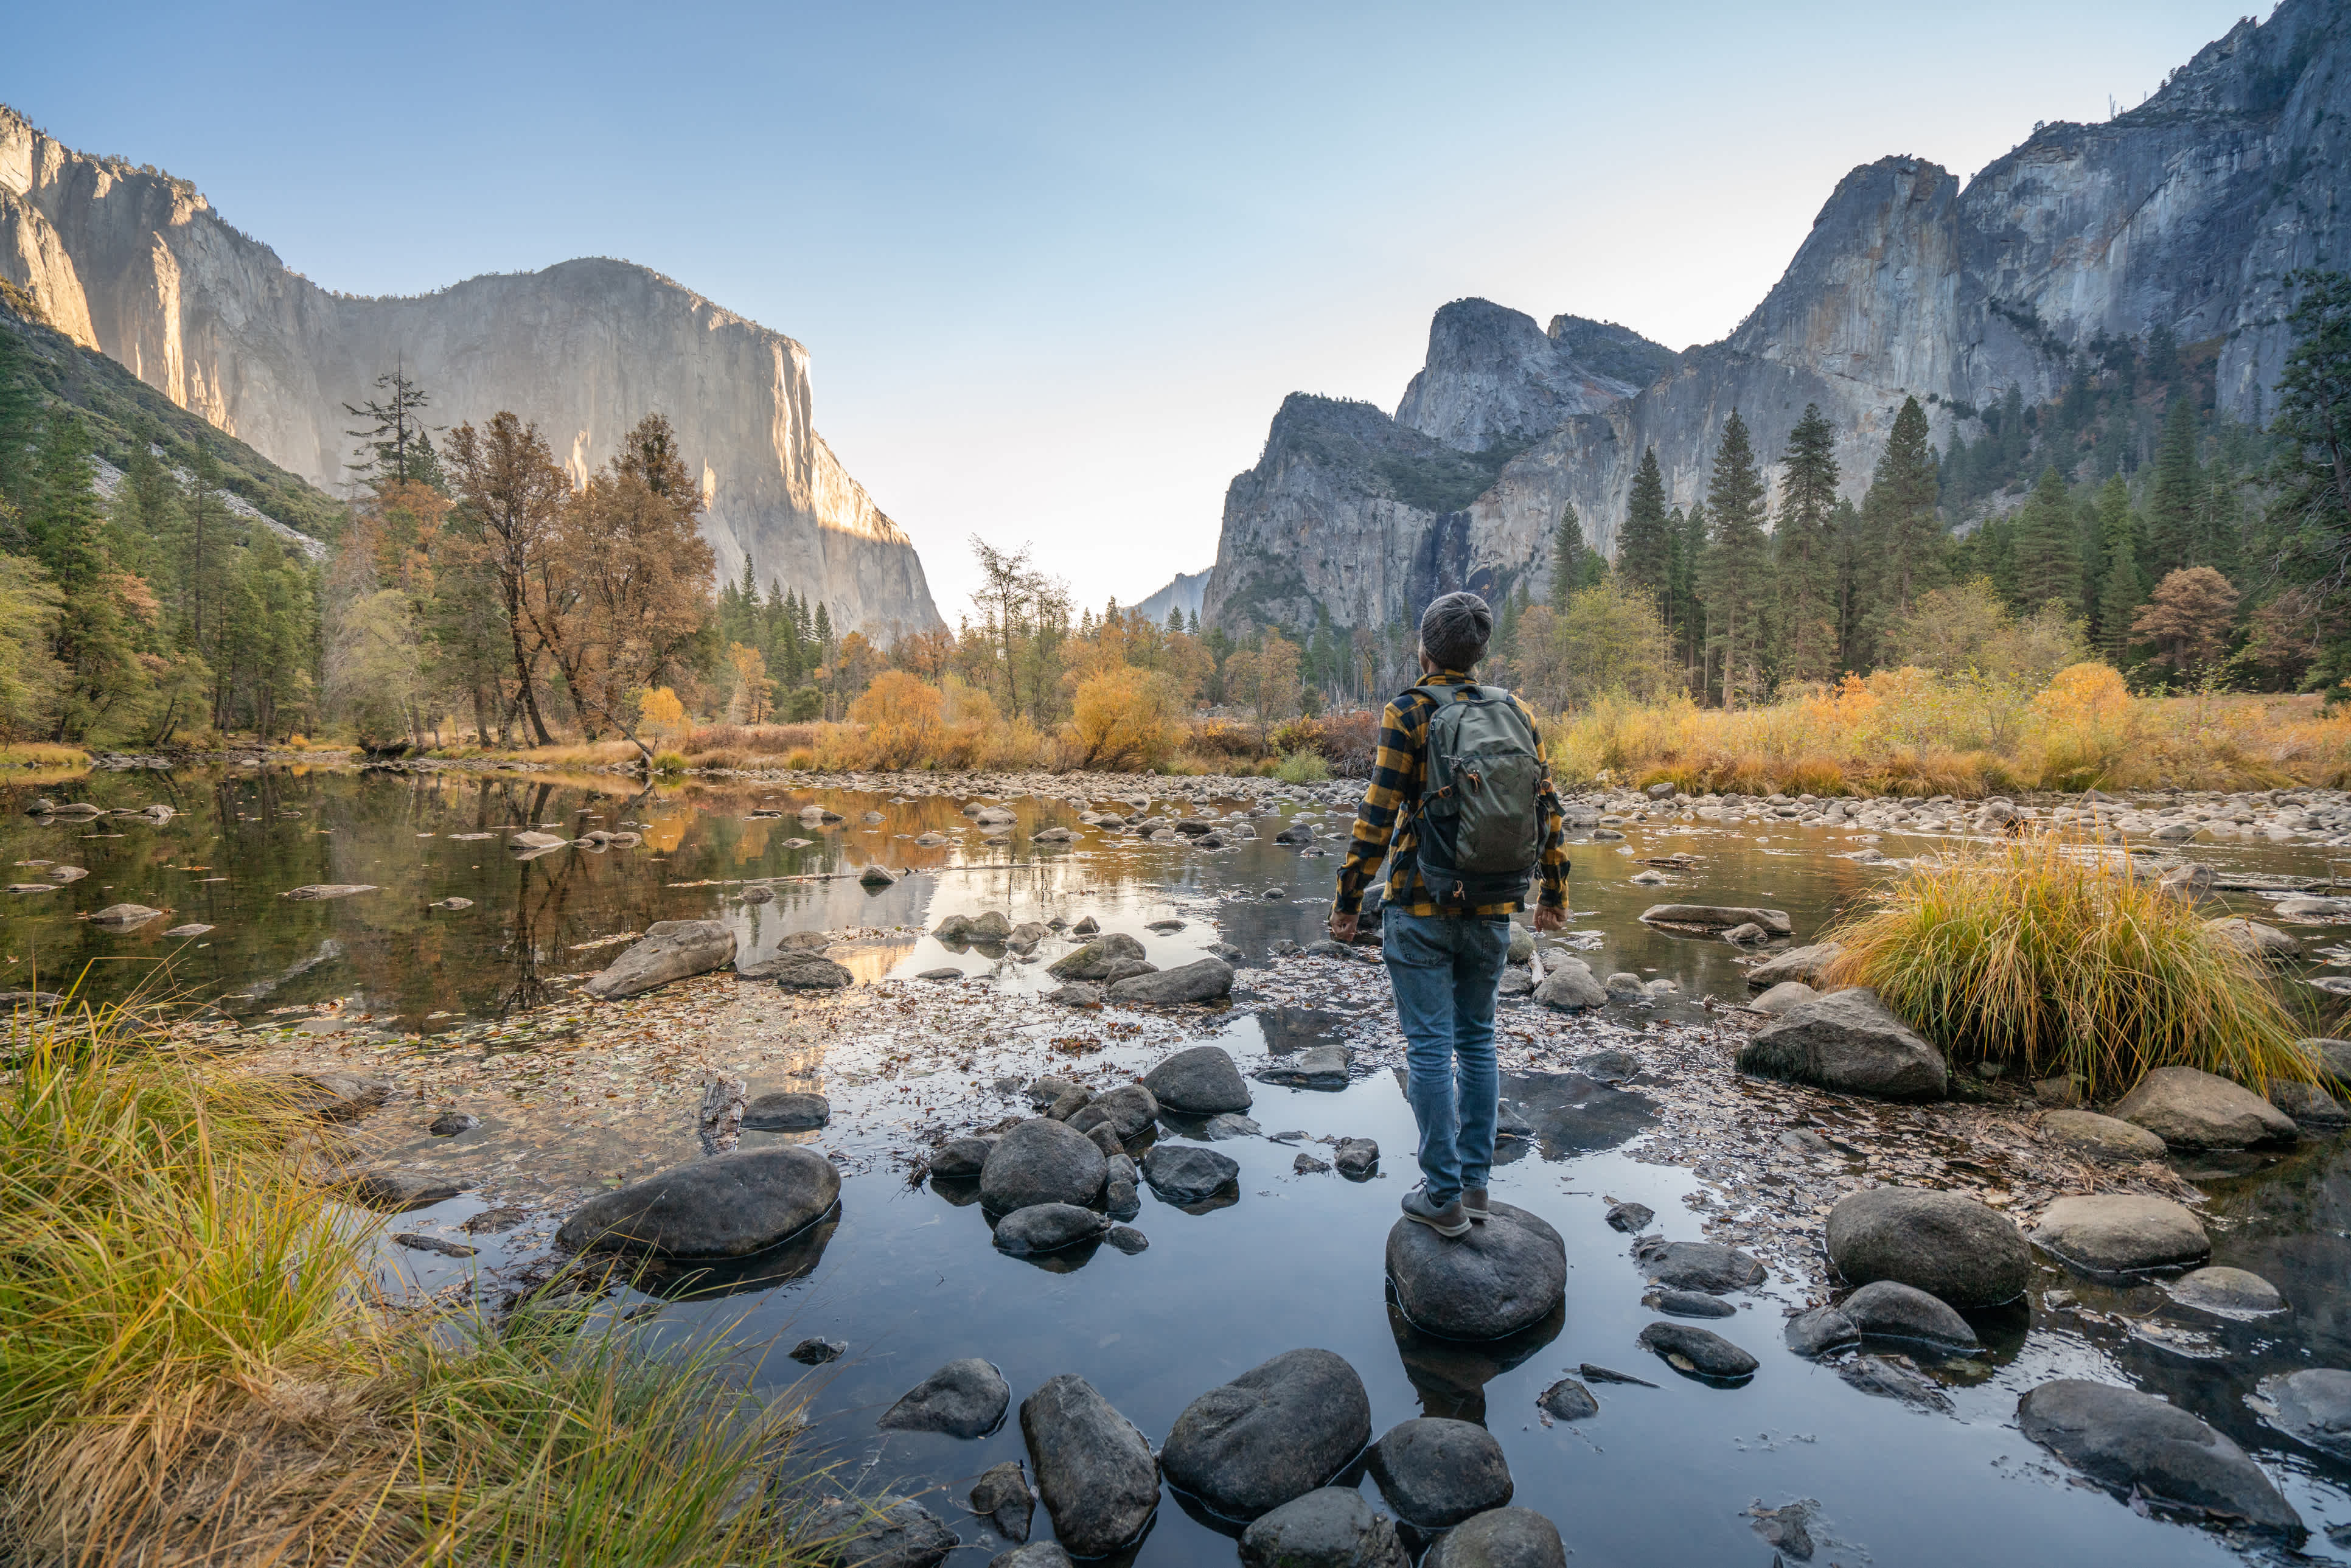 Junger Mann betrachtet Yosemite-Tal vom Fluss aus, Reflexionen auf der Wasseroberfläche